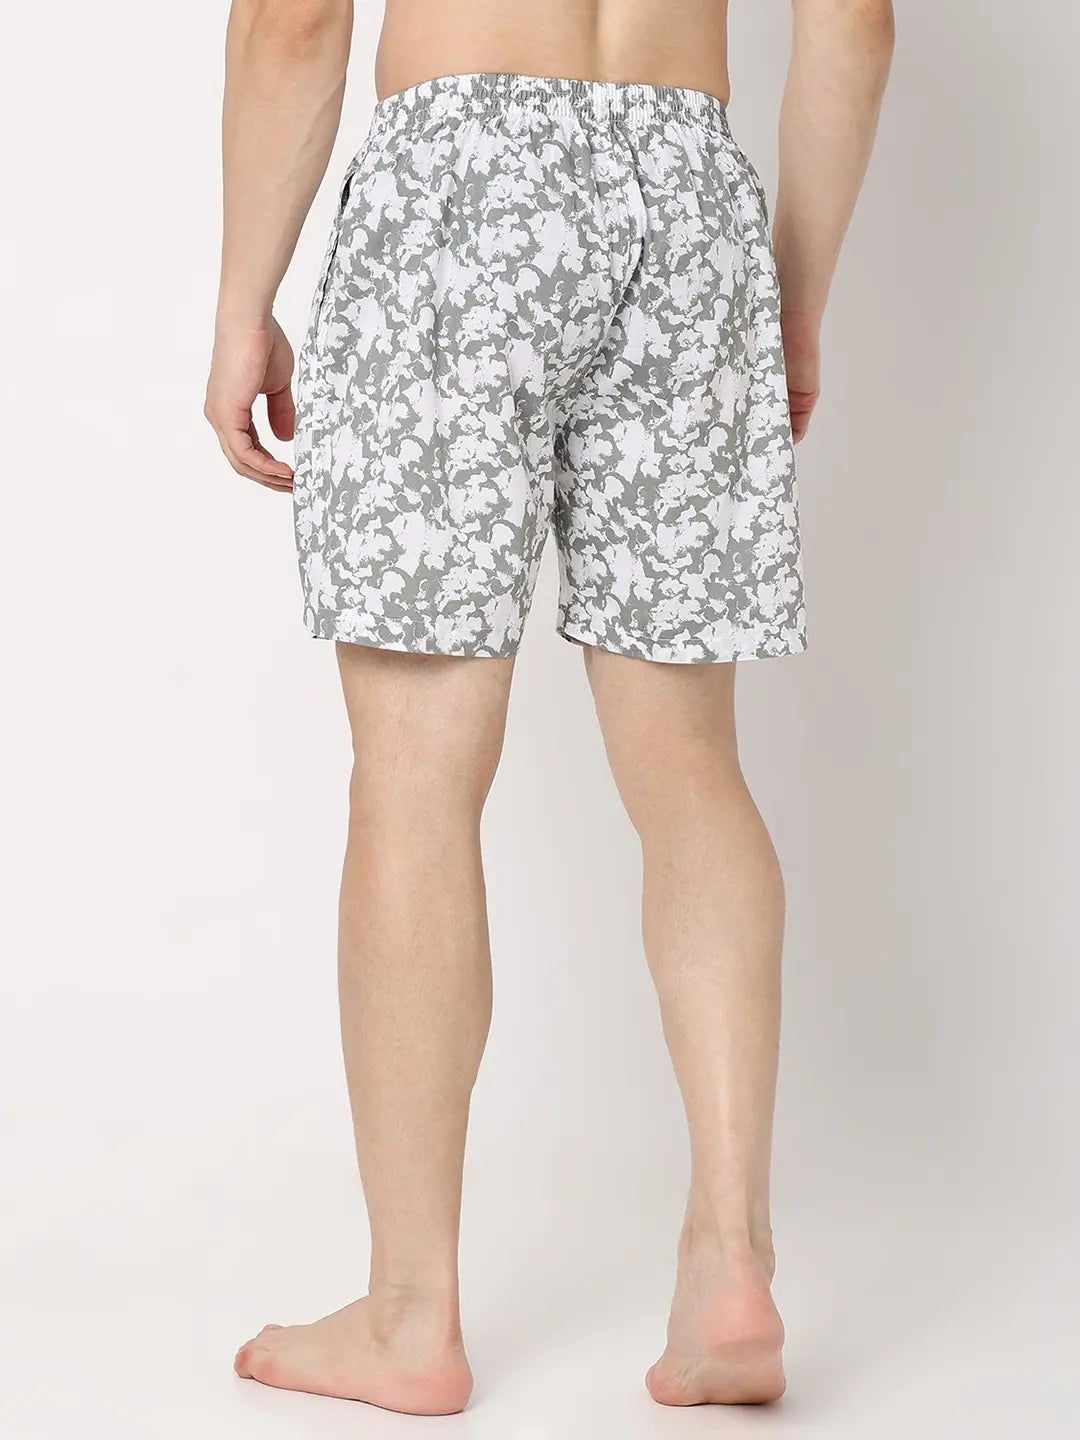 Underjeans by Spykar Men Premium White Cotton Blend Regular Fit Boxer Shorts